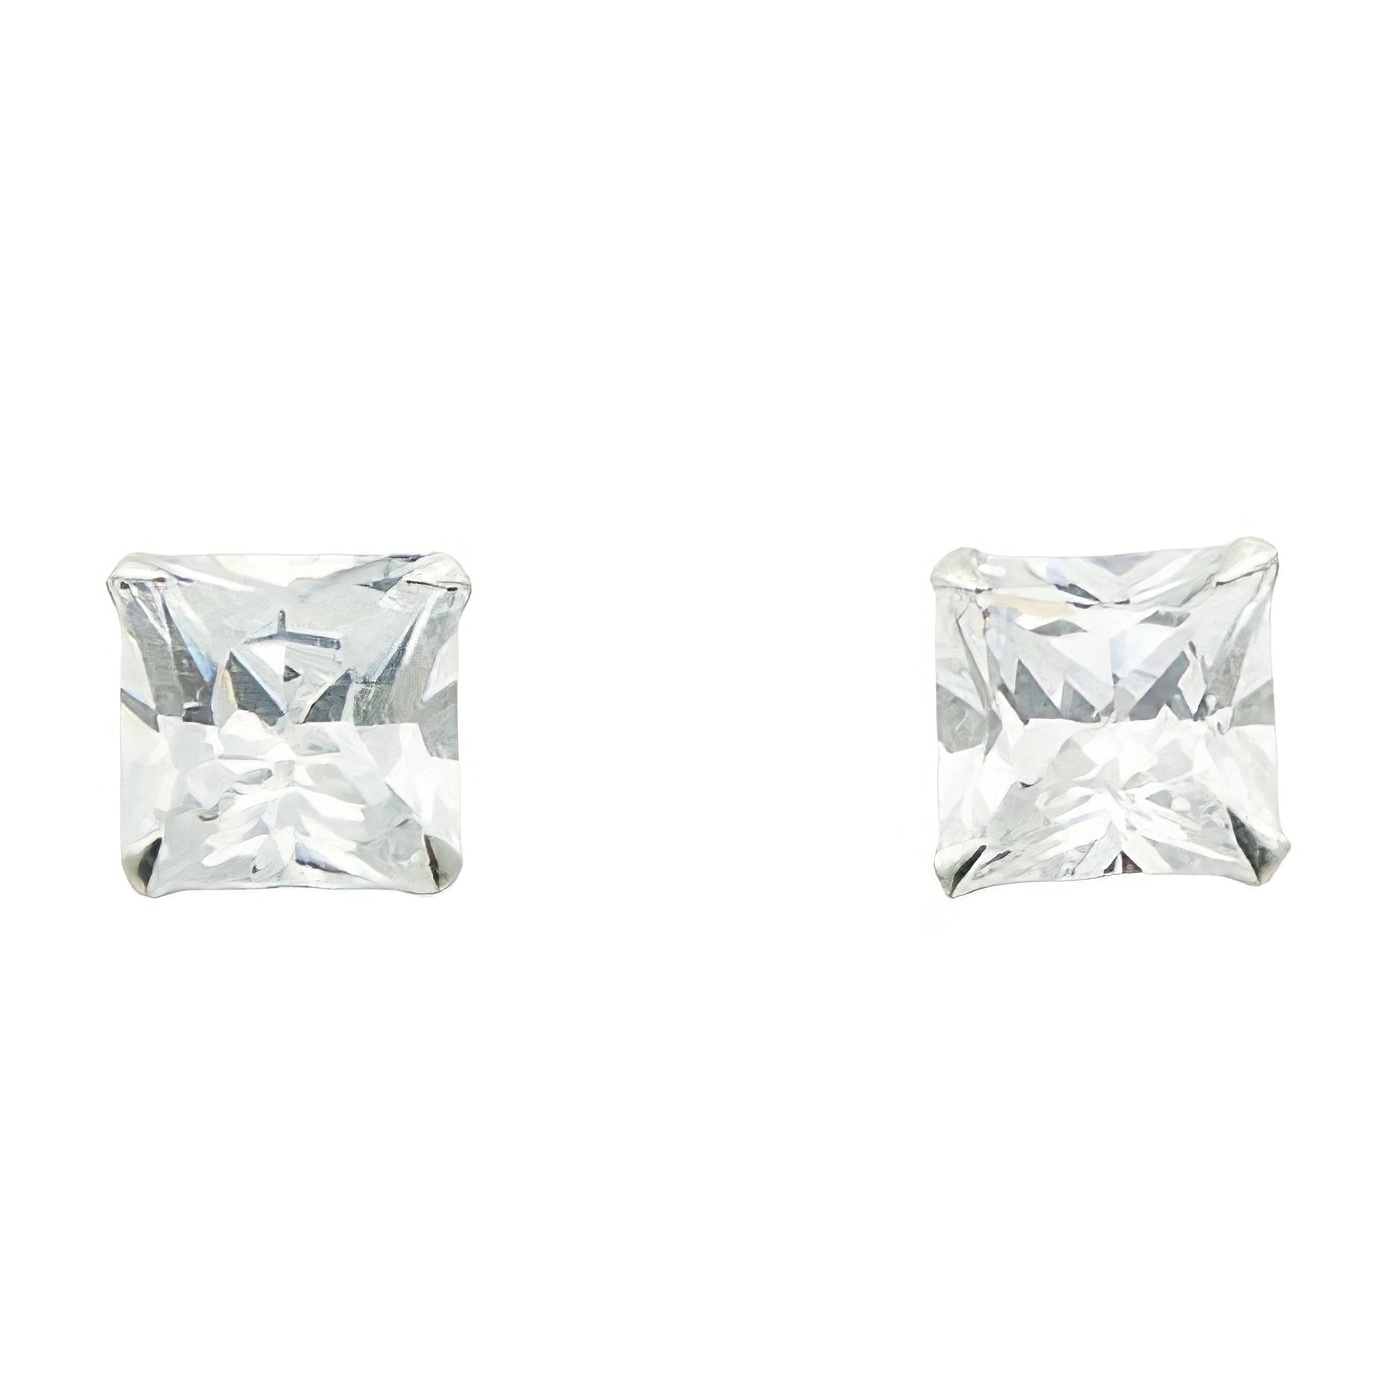 Cubic Zirconia Ear Stud Earrings Sterling Silver Setting by BeYindi 